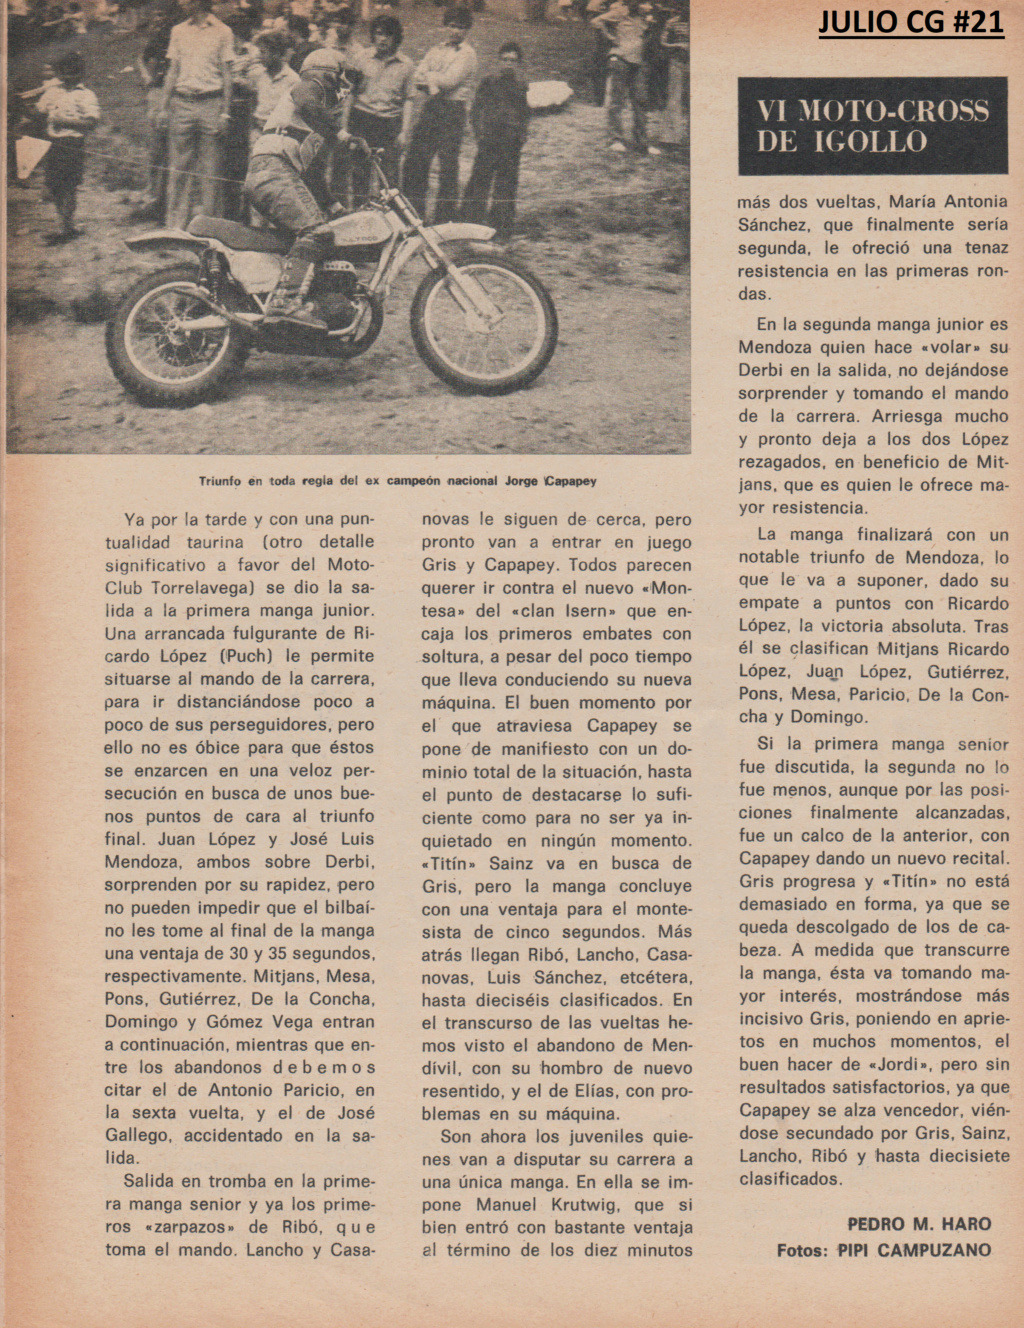 Motocross Igollo 75 cc - 1975 Escze341